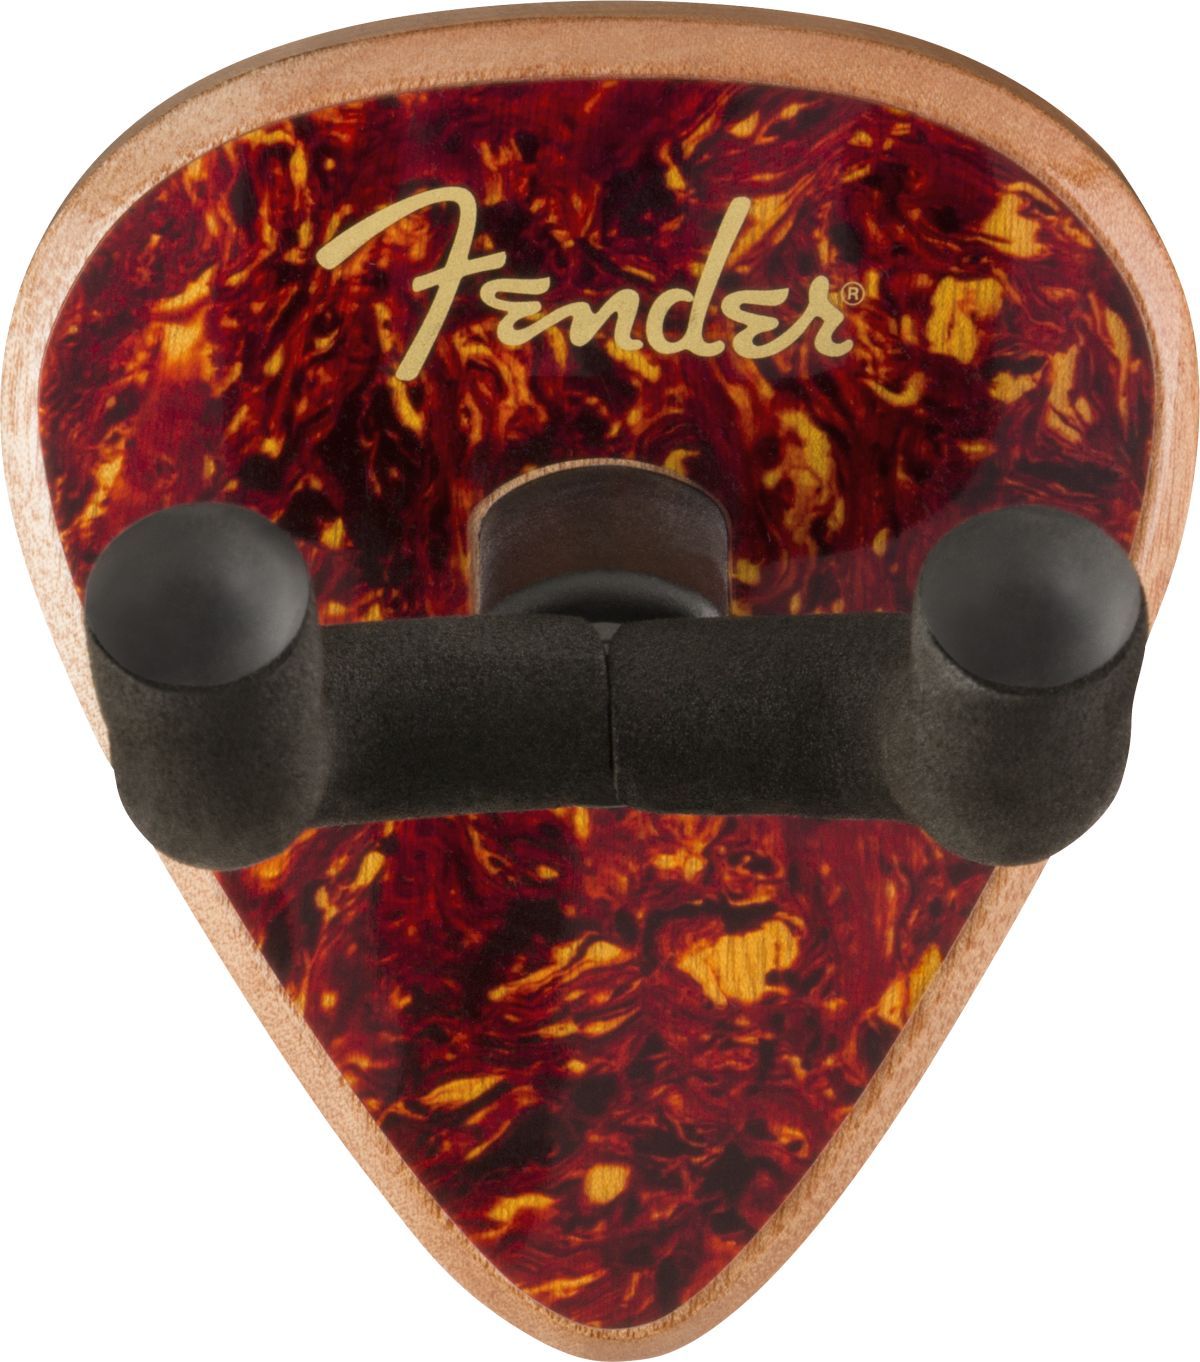 Fender 351 Wall Hanger Tortoiseshell